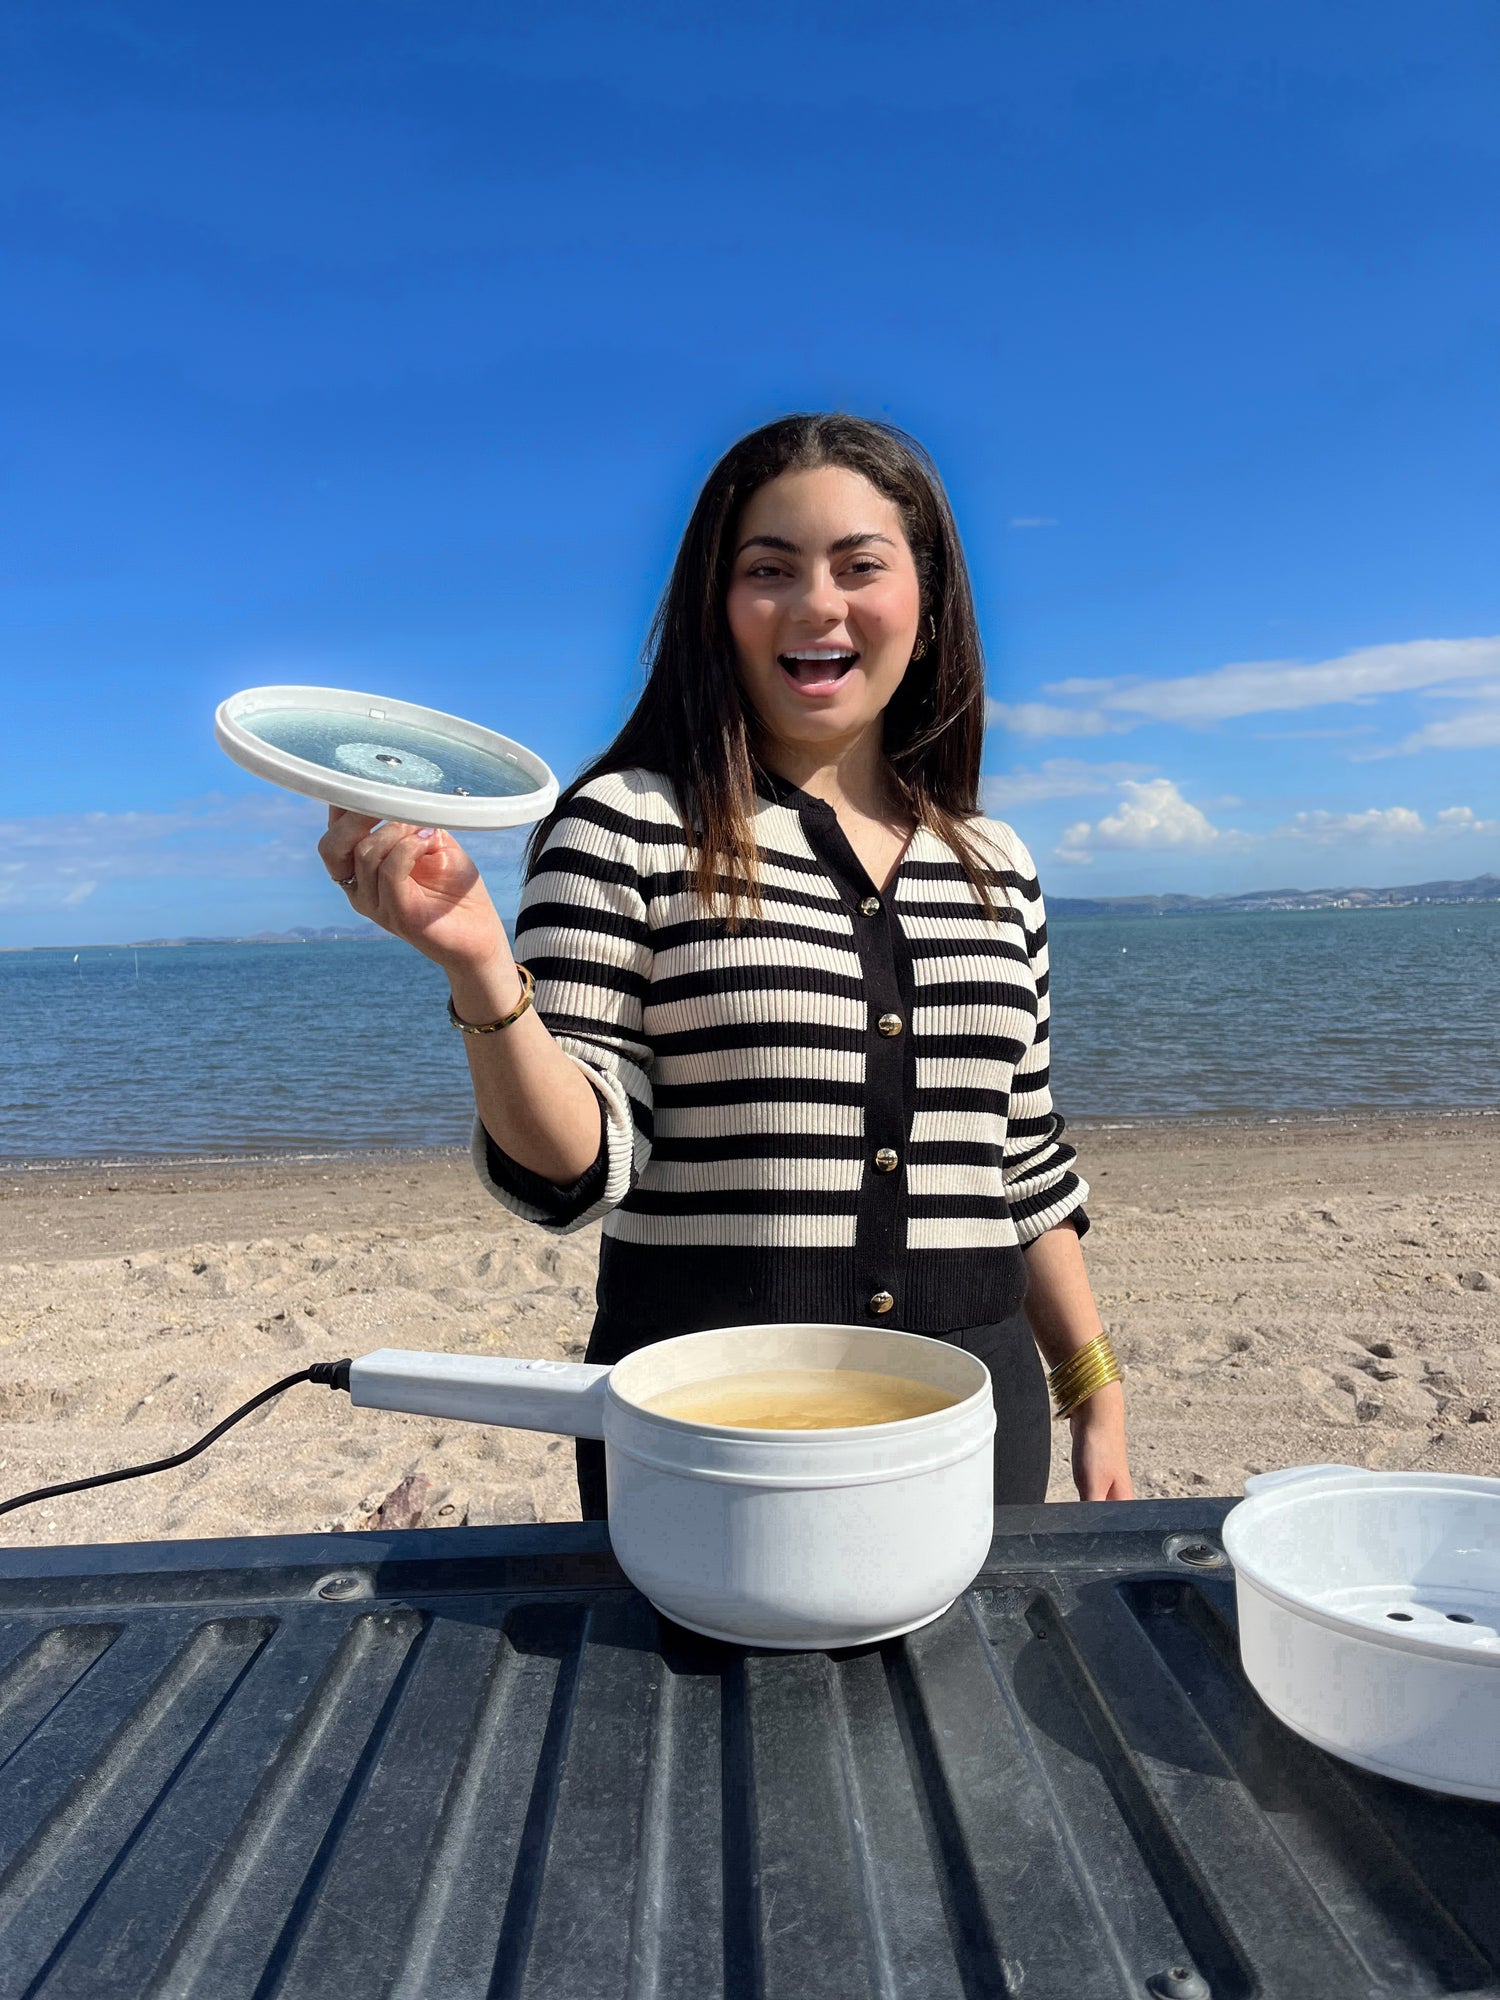 Una mujer alegre sostiene la tapa de una olla eléctrica portátil en la que se está cocinando pasta, sobre una mesa al aire libre con la playa y un cielo azul claro de fondo